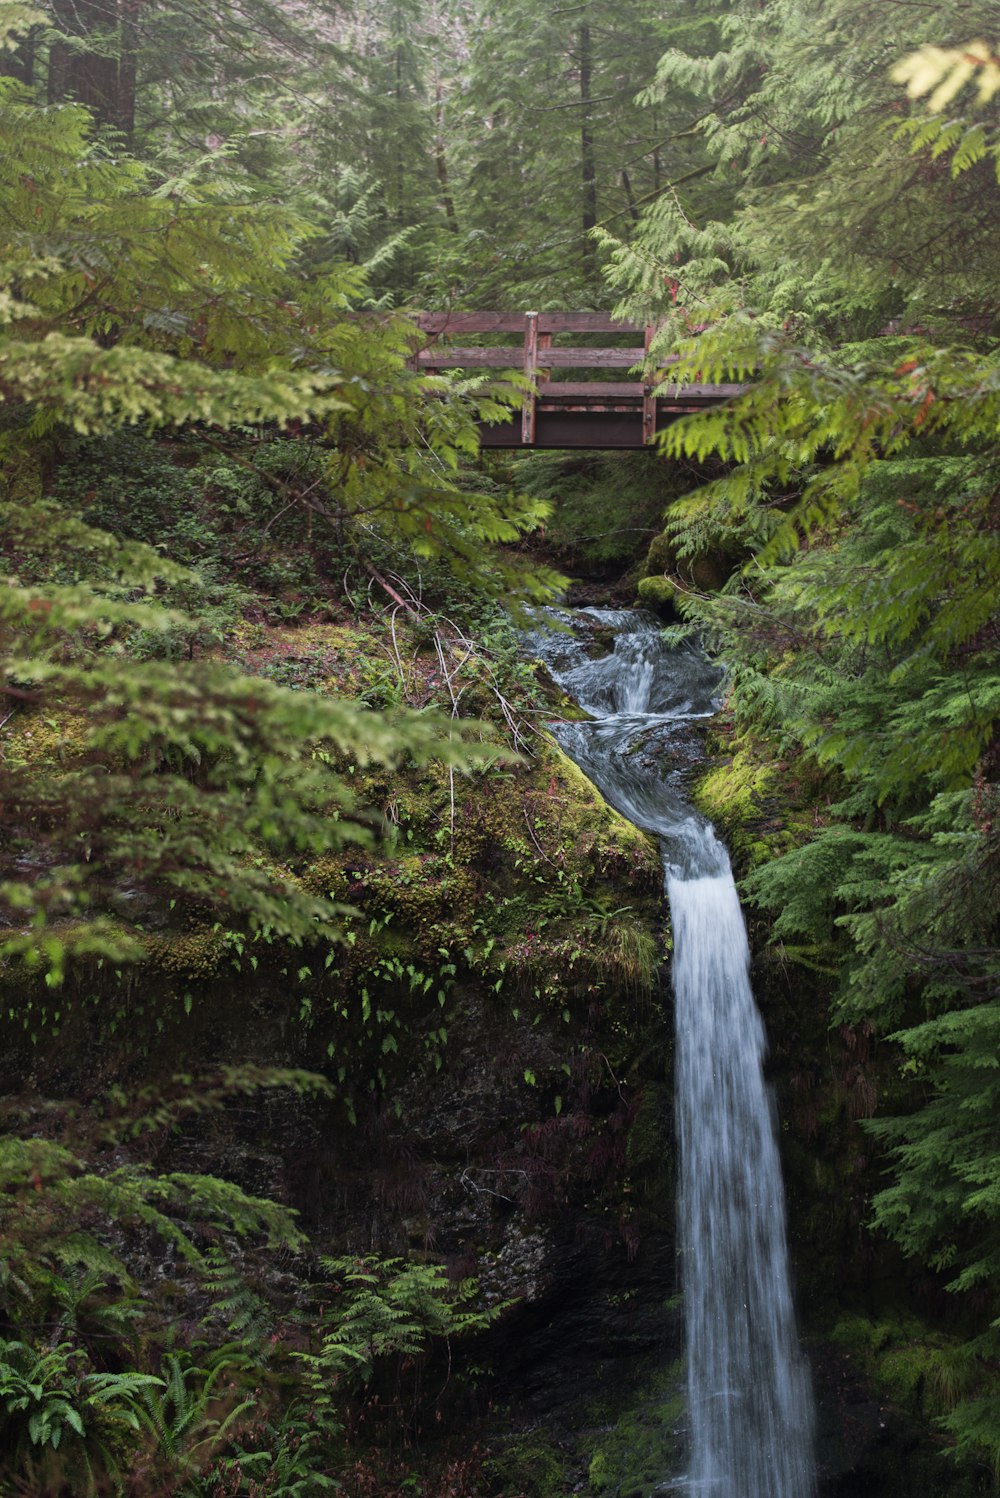 brown wooden bridge over waterfalls